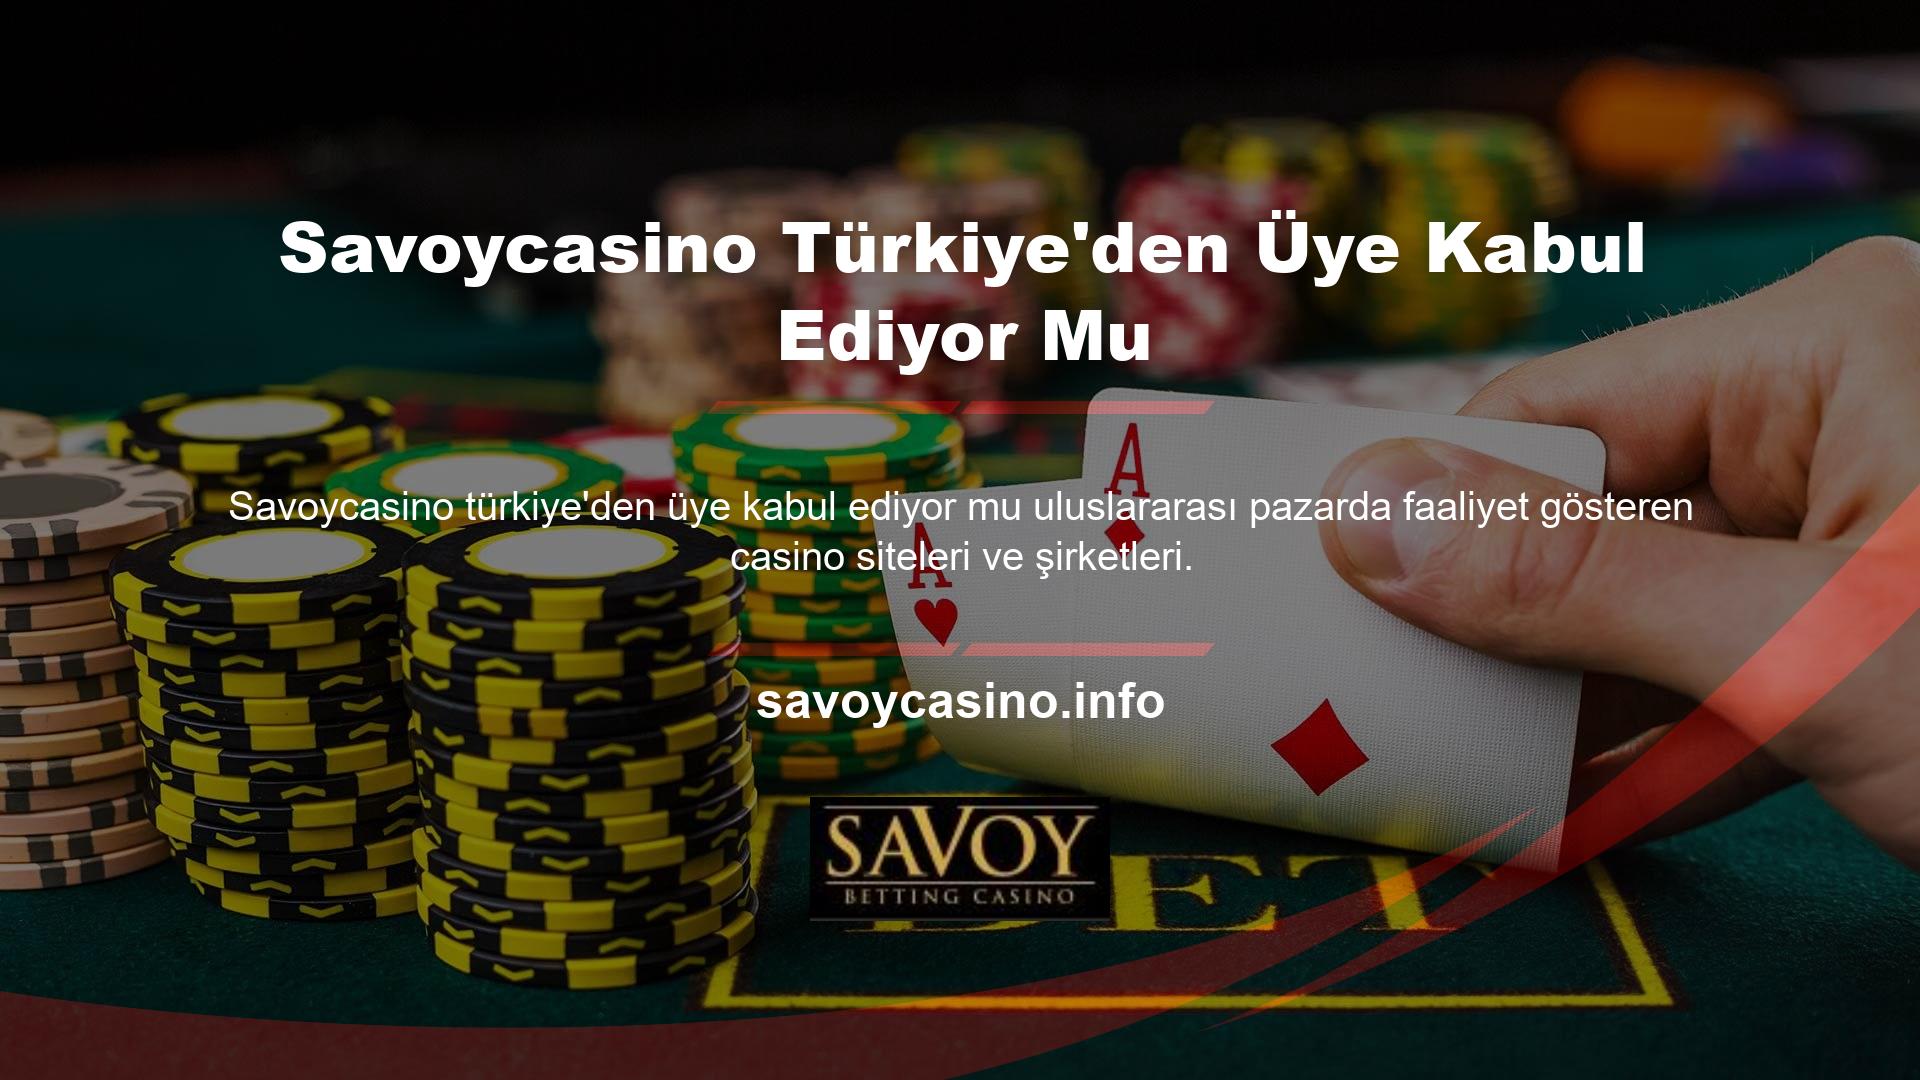 Casino siteleri Türk üye kabul ediyor mu 18 yaşından büyük herkes üye olabilir